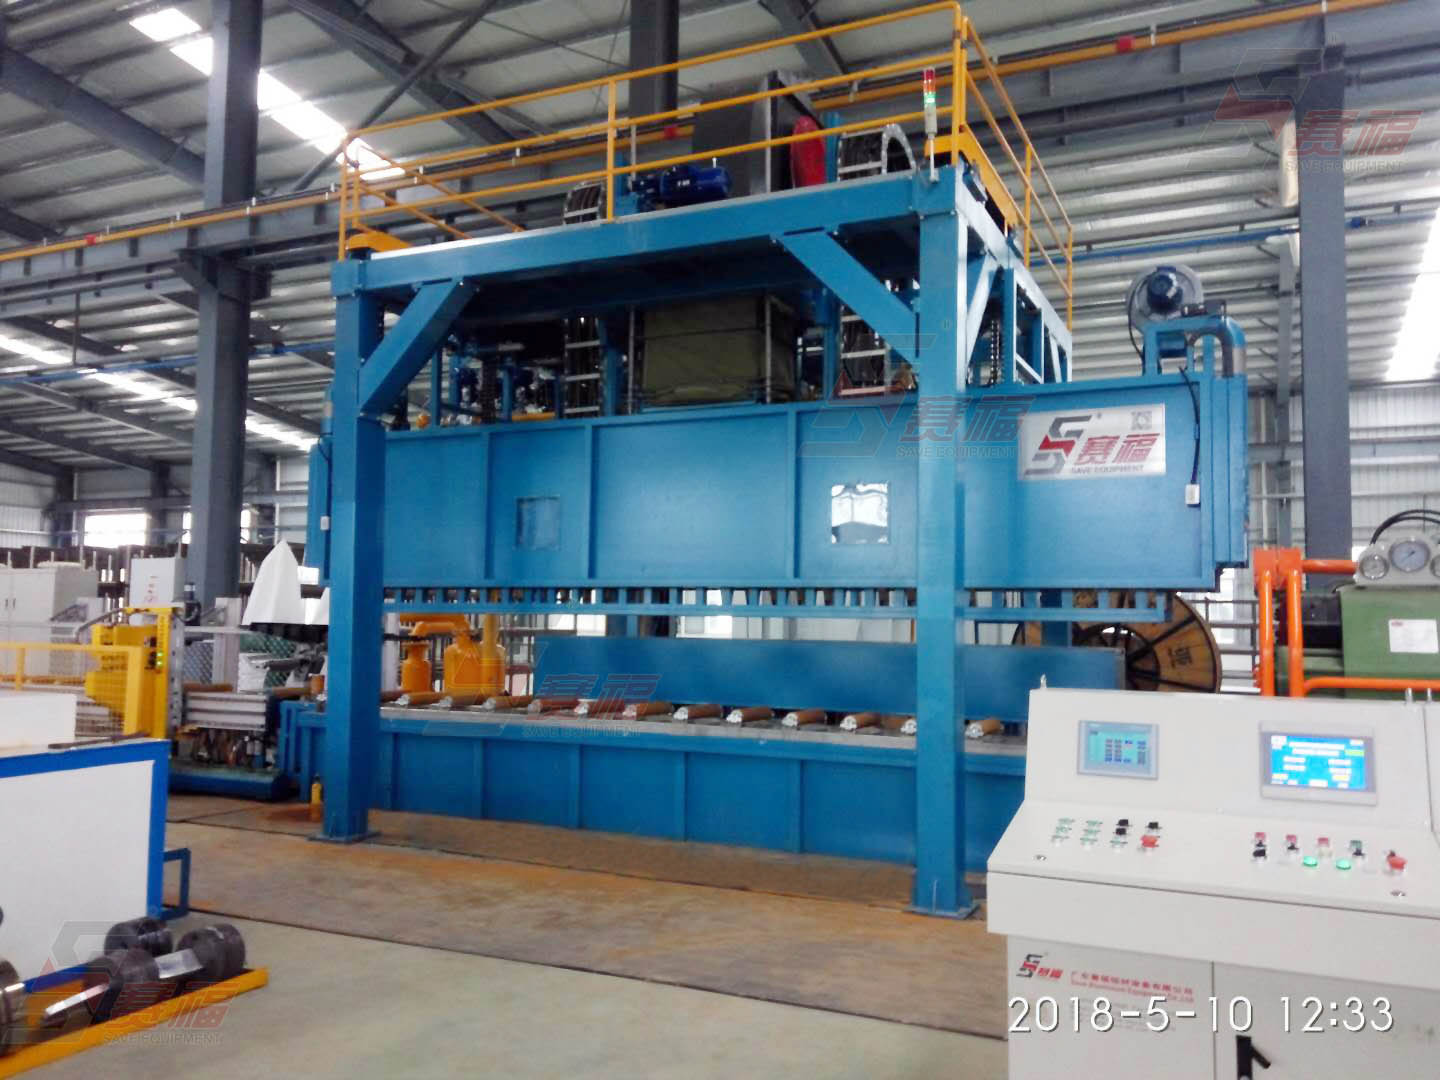 广东科优精密机械制造有限公司2000吨在线淬火设备投入生产。